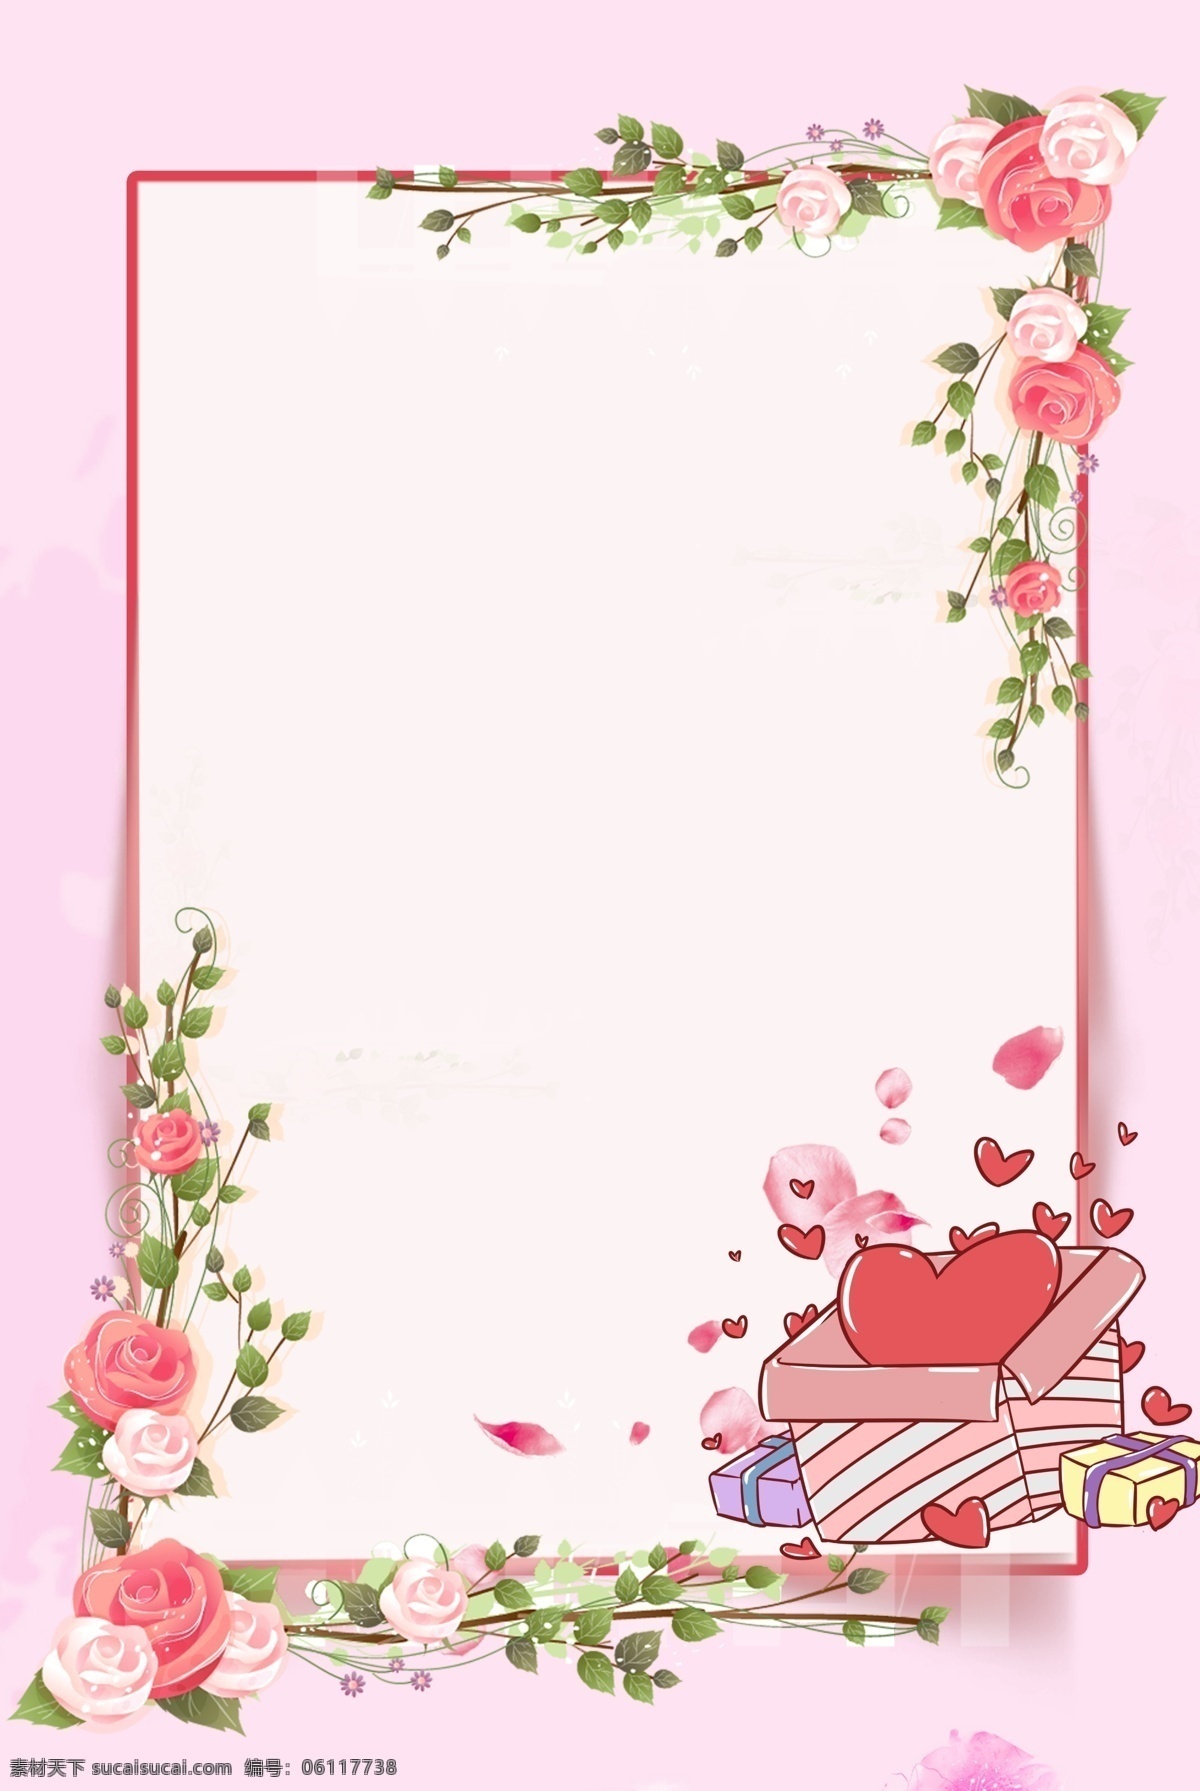 七夕 花朵 边框 背景 唯美 爱情 爱 粉色 爱心 手绘 水彩 情感 节日